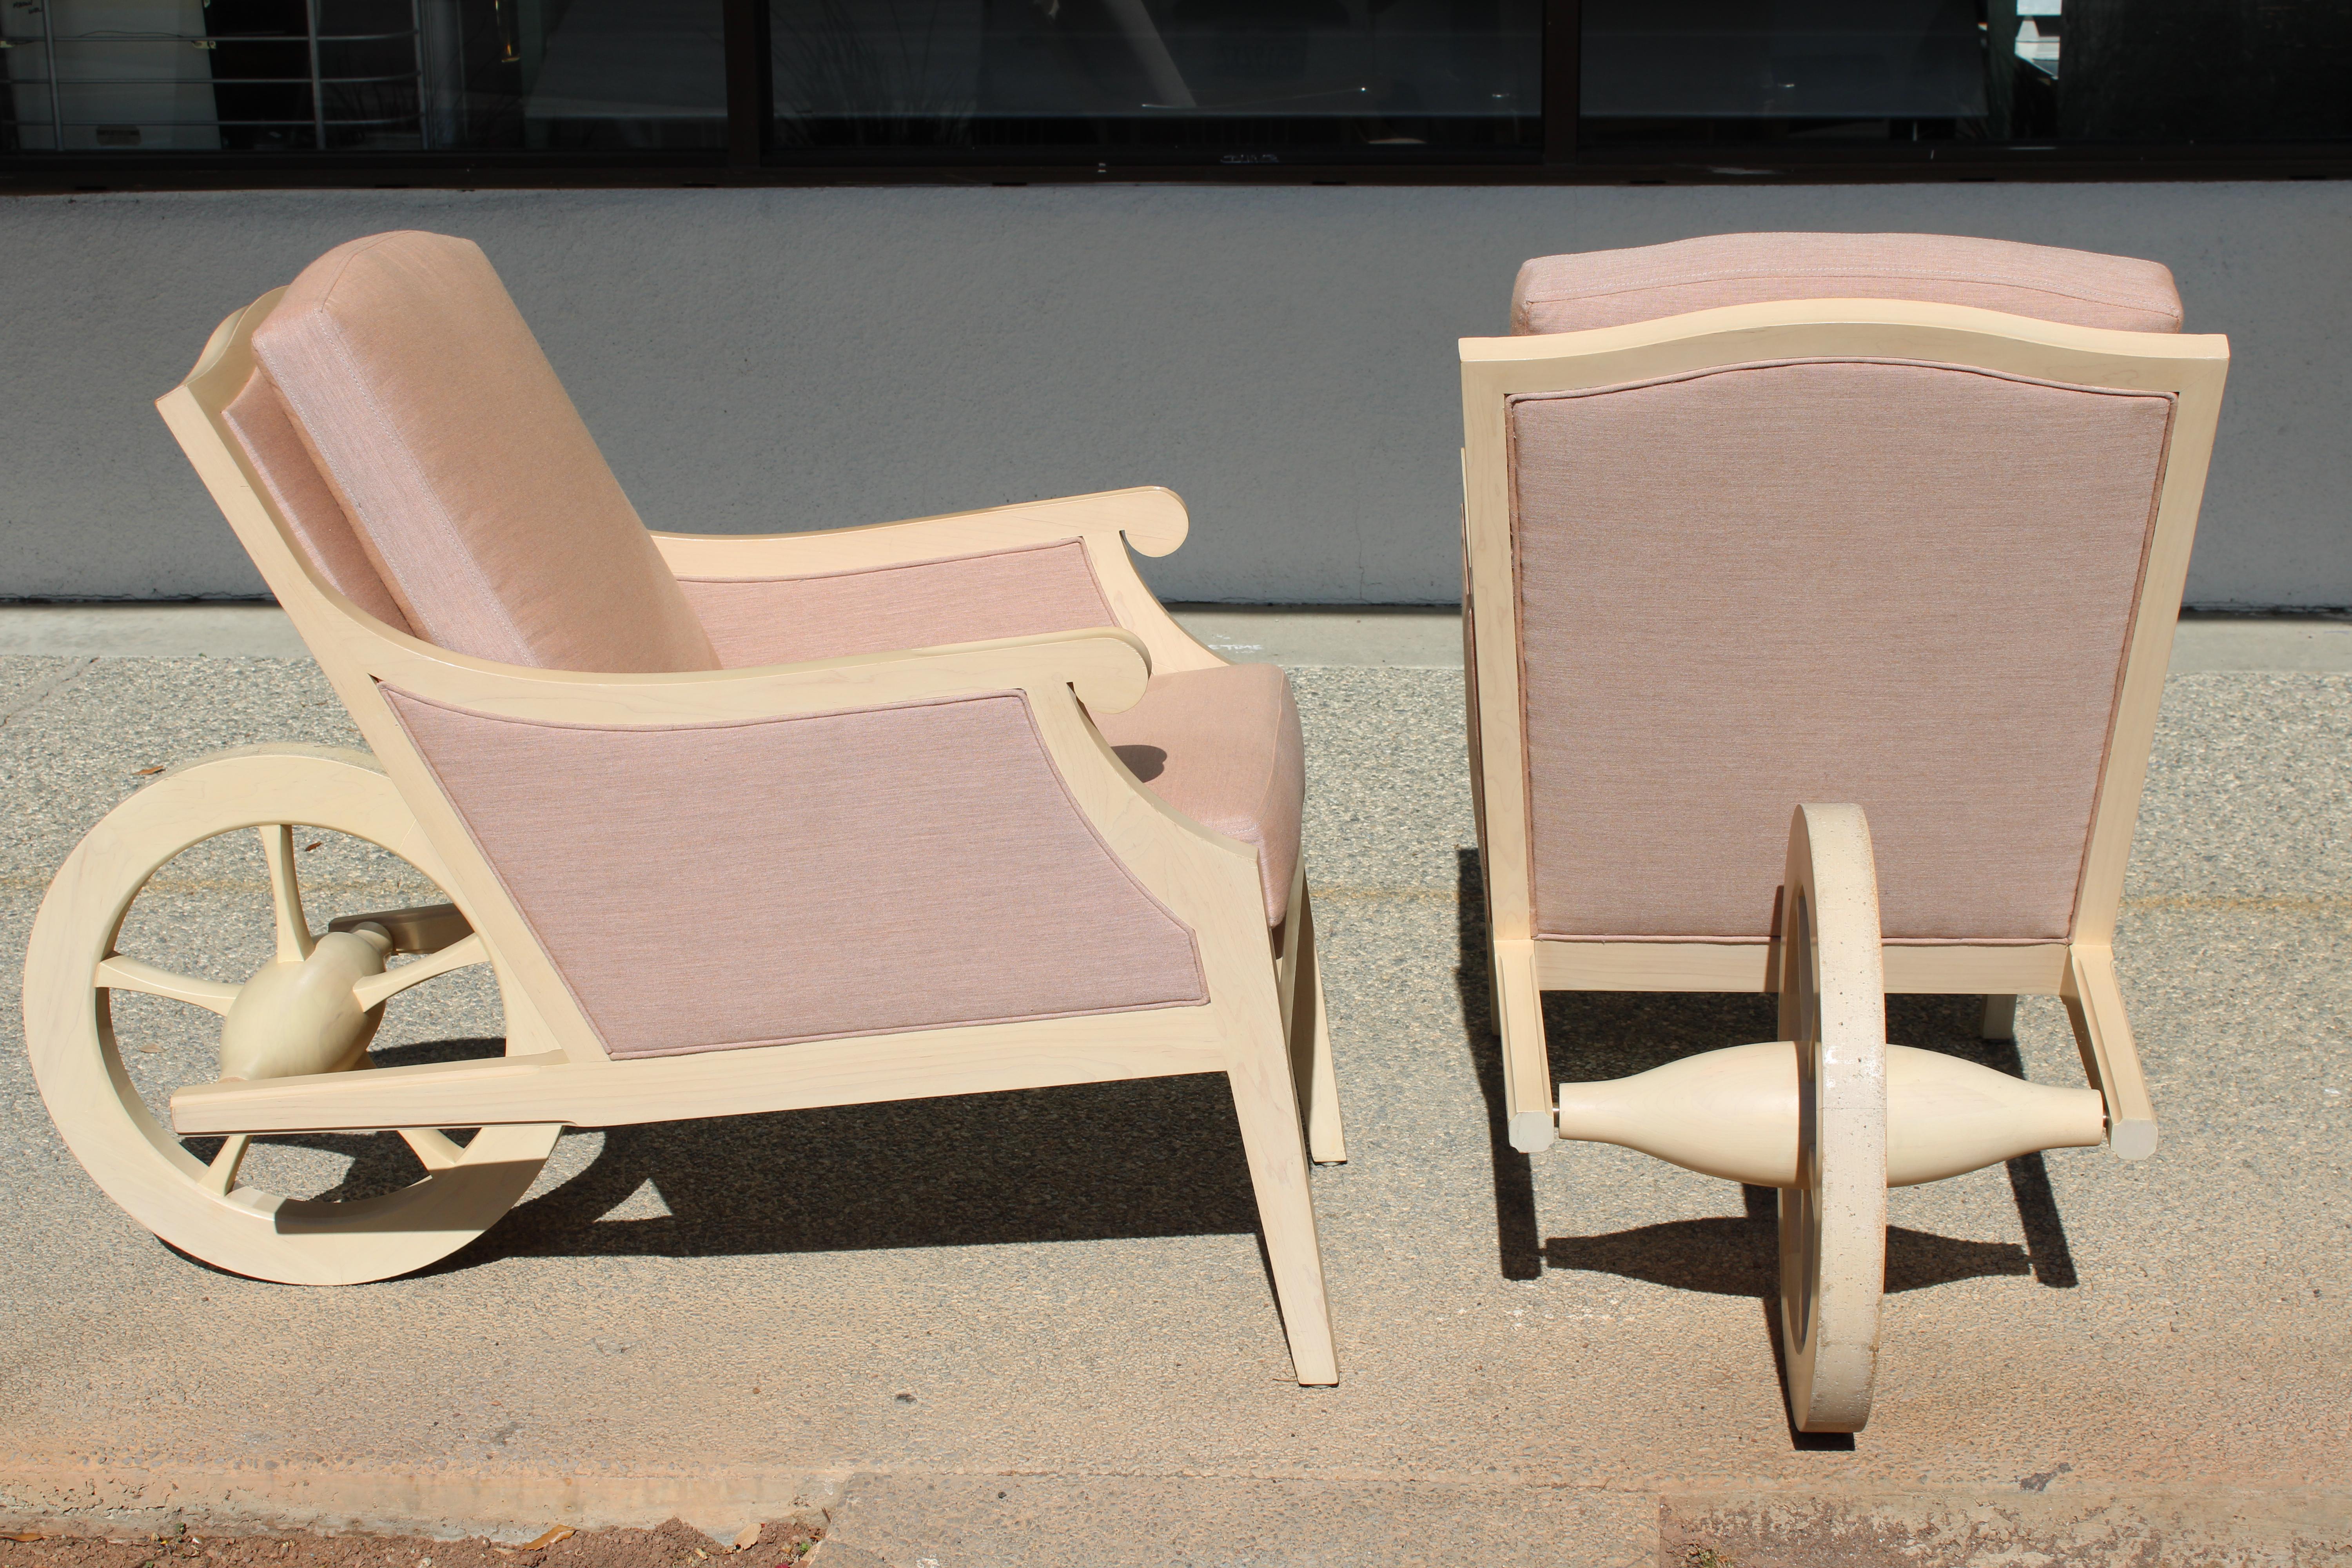 Paire de chaises longues Man Ray conçues par Philippe Starck pour l'hôtel Clift Royal Sonesta, San Francisco, CA, vers 2000. Les chaises ont été restaurées par des professionnels et retapissées en tissu Sunbrella. Les chaises mesurent 22,5